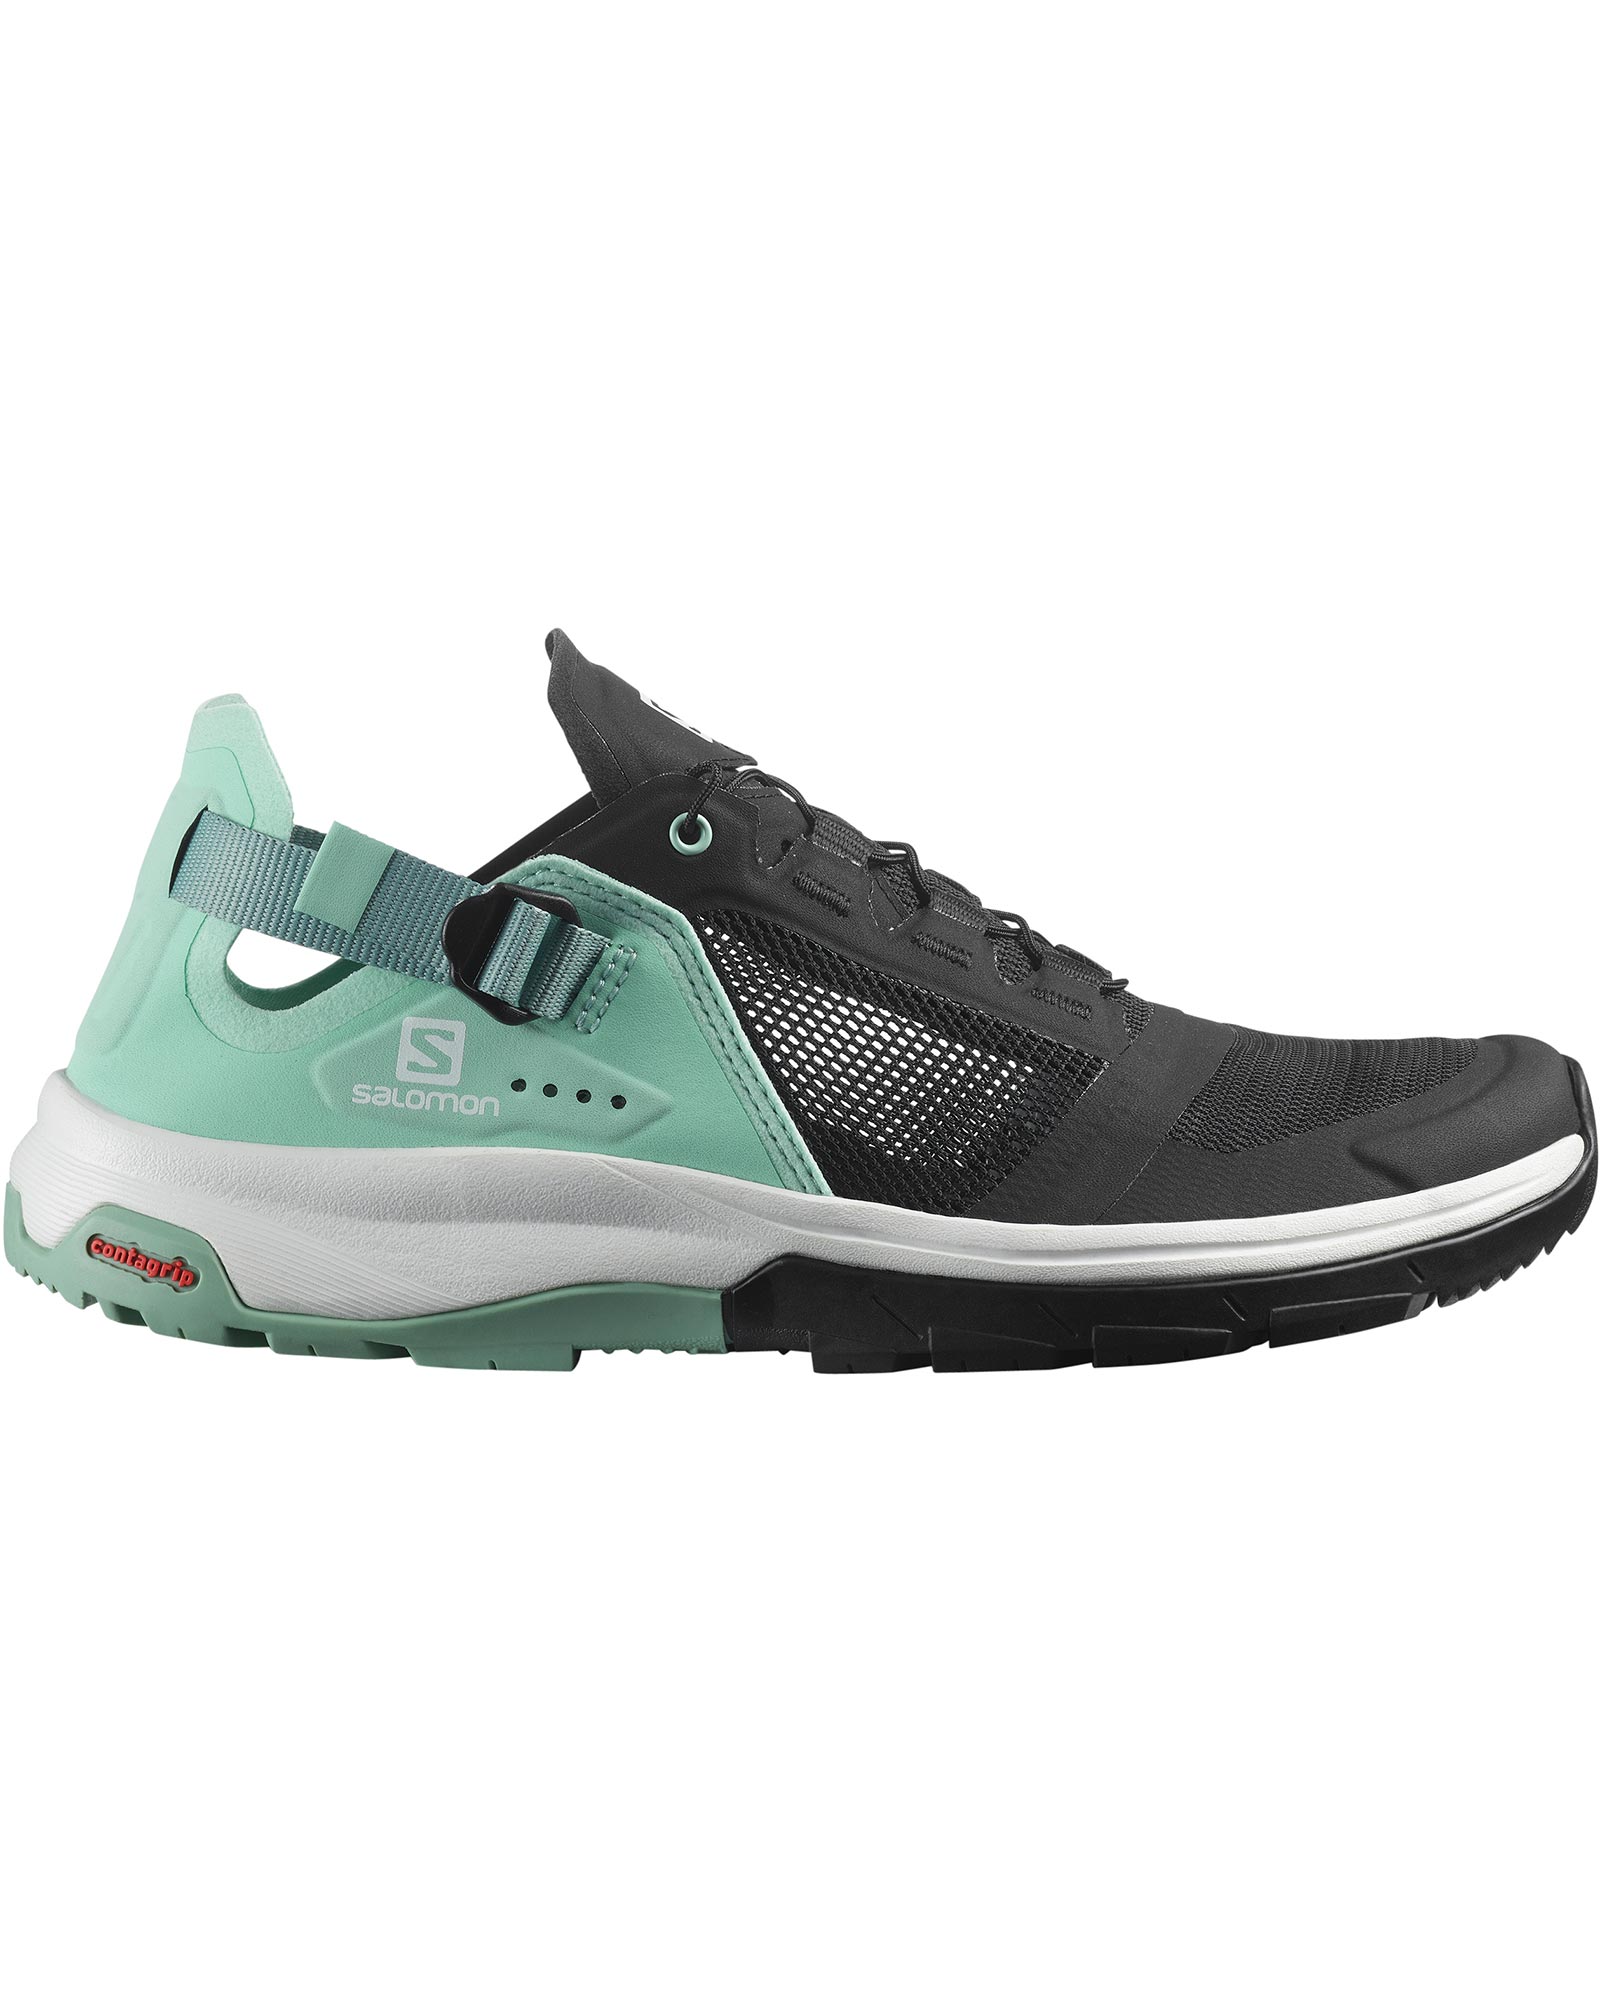 Salomon Tech Amphib 4 Women’s Shoes - Black/Yucca/Granite Green UK 4